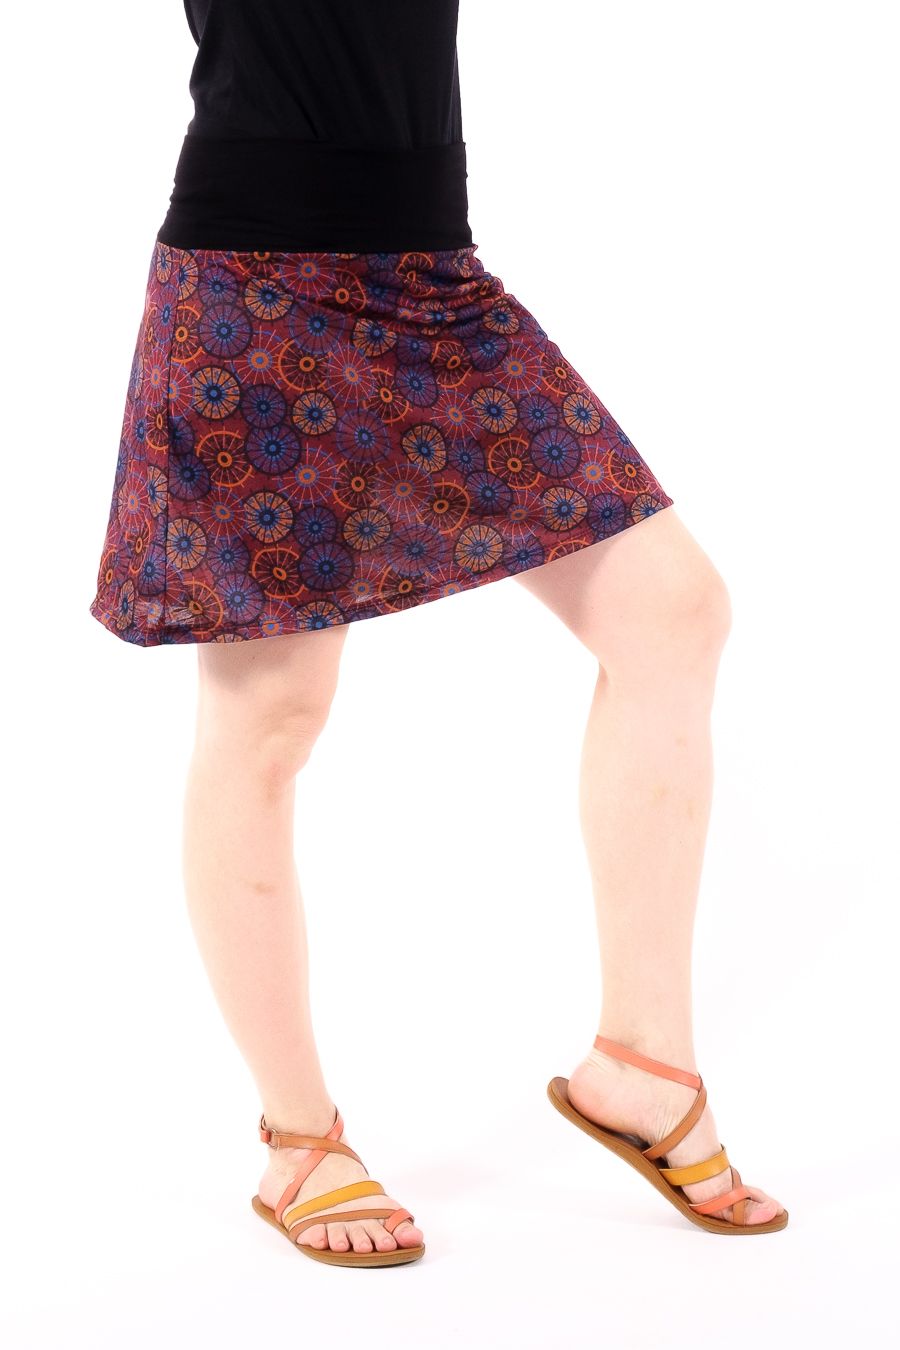 Krátká dámská letní sukně LOLA 47 - TT0102-04-029